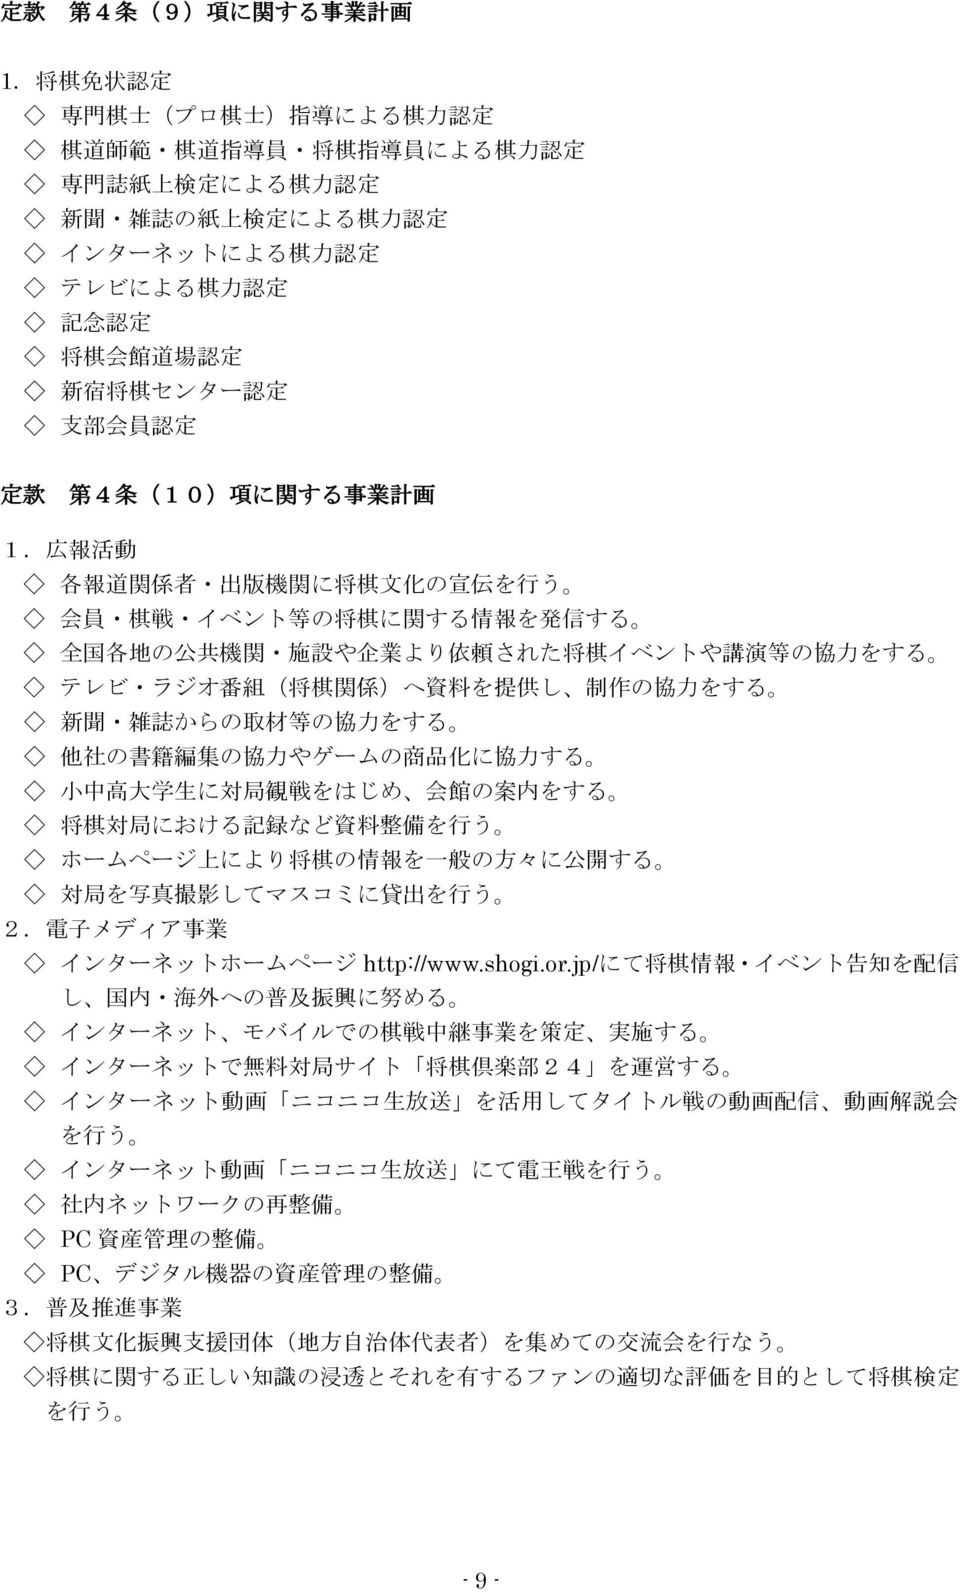 新 宿 将 棋 センター 認 定 支 部 会 員 認 定 定 款 第 4 条 (10) 項 に 関 する 事 業 計 画 1.